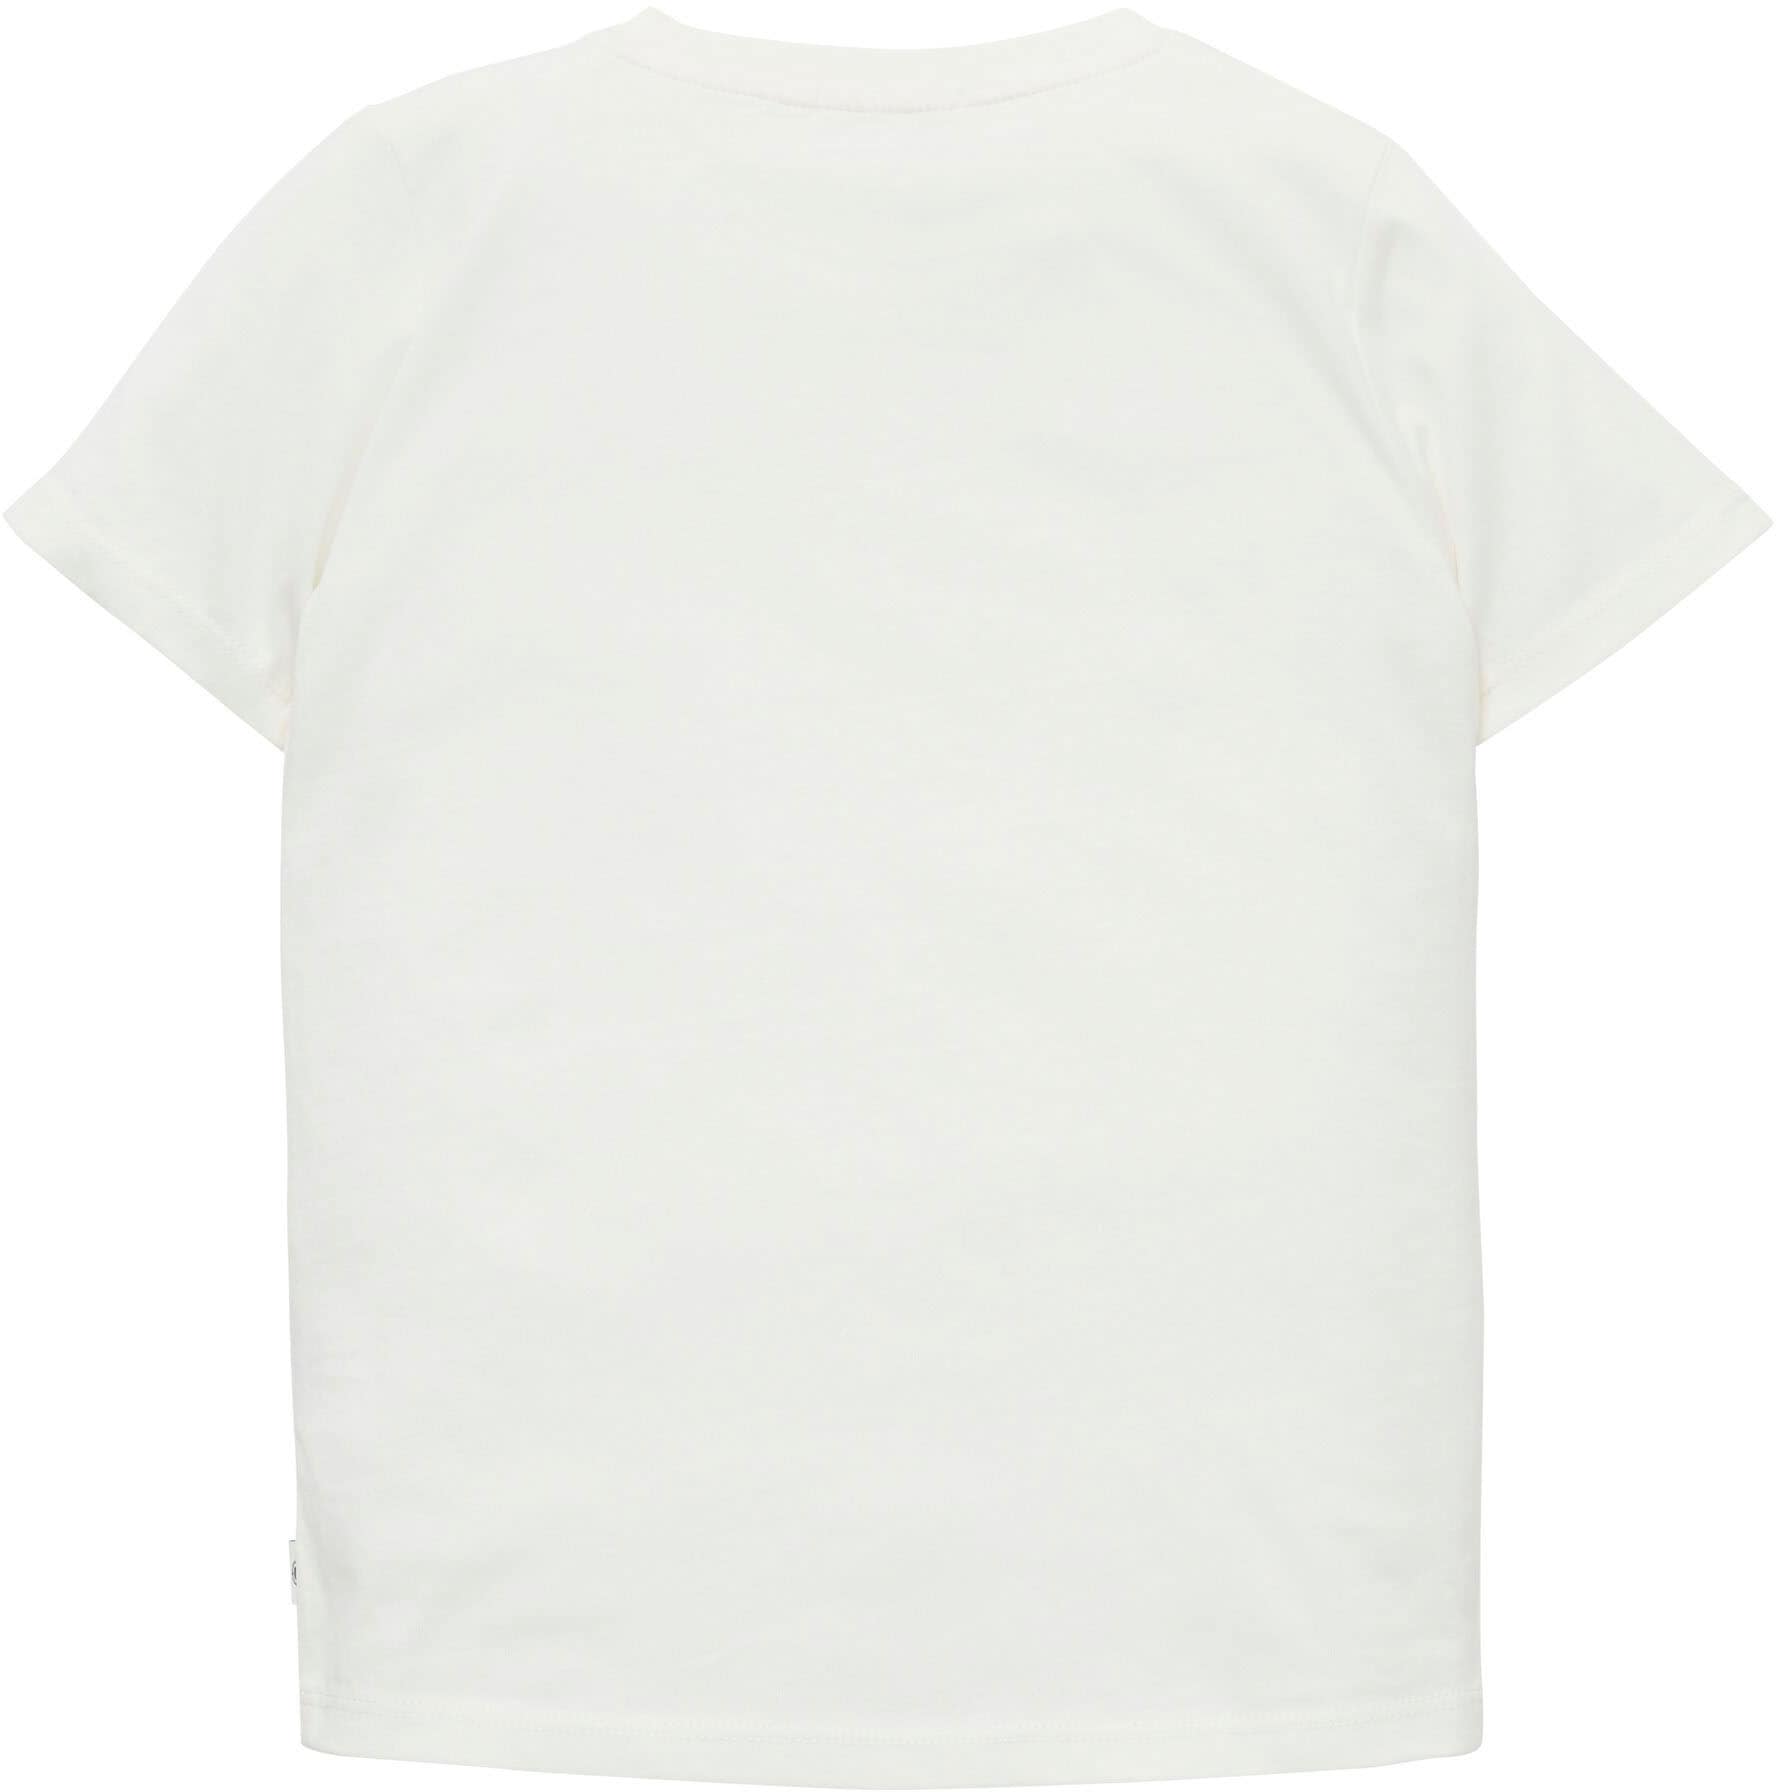 TAILOR BAUR Badge online kaufen der T-Shirt, TOM Seite | an